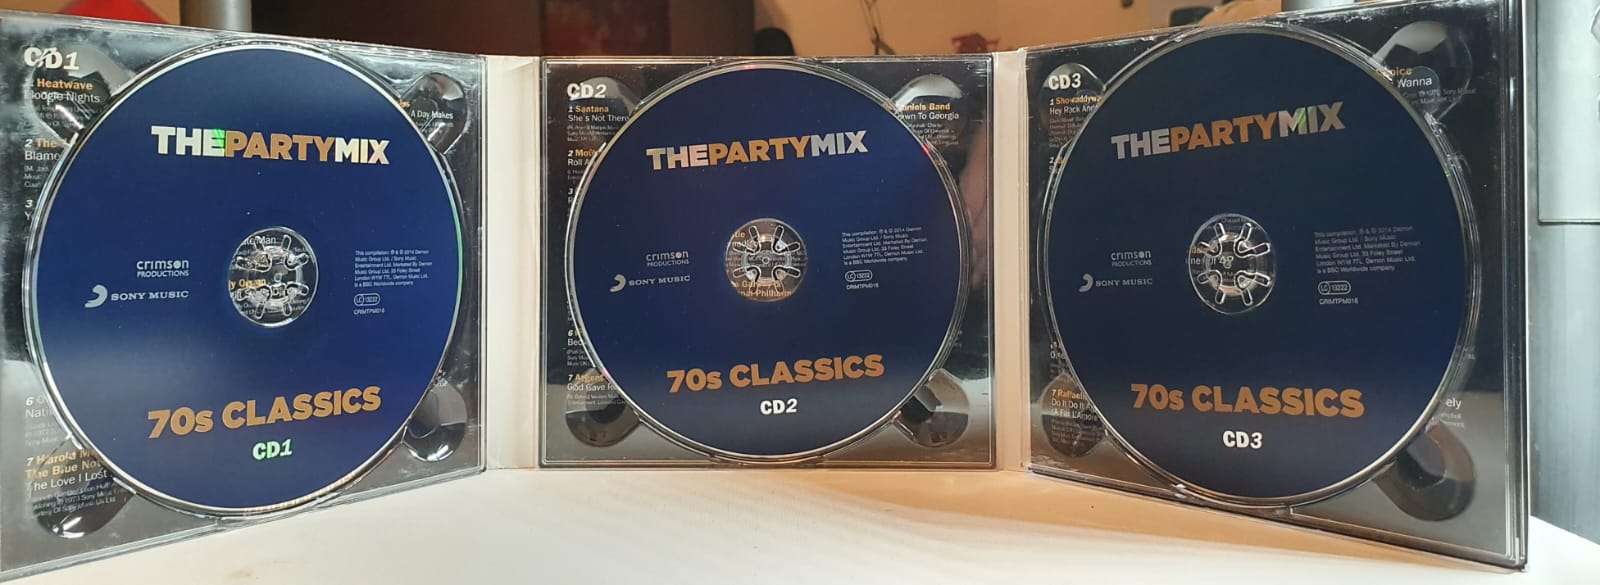 CD Compilado – The Party Mix 70s Classics (3XCD Set)